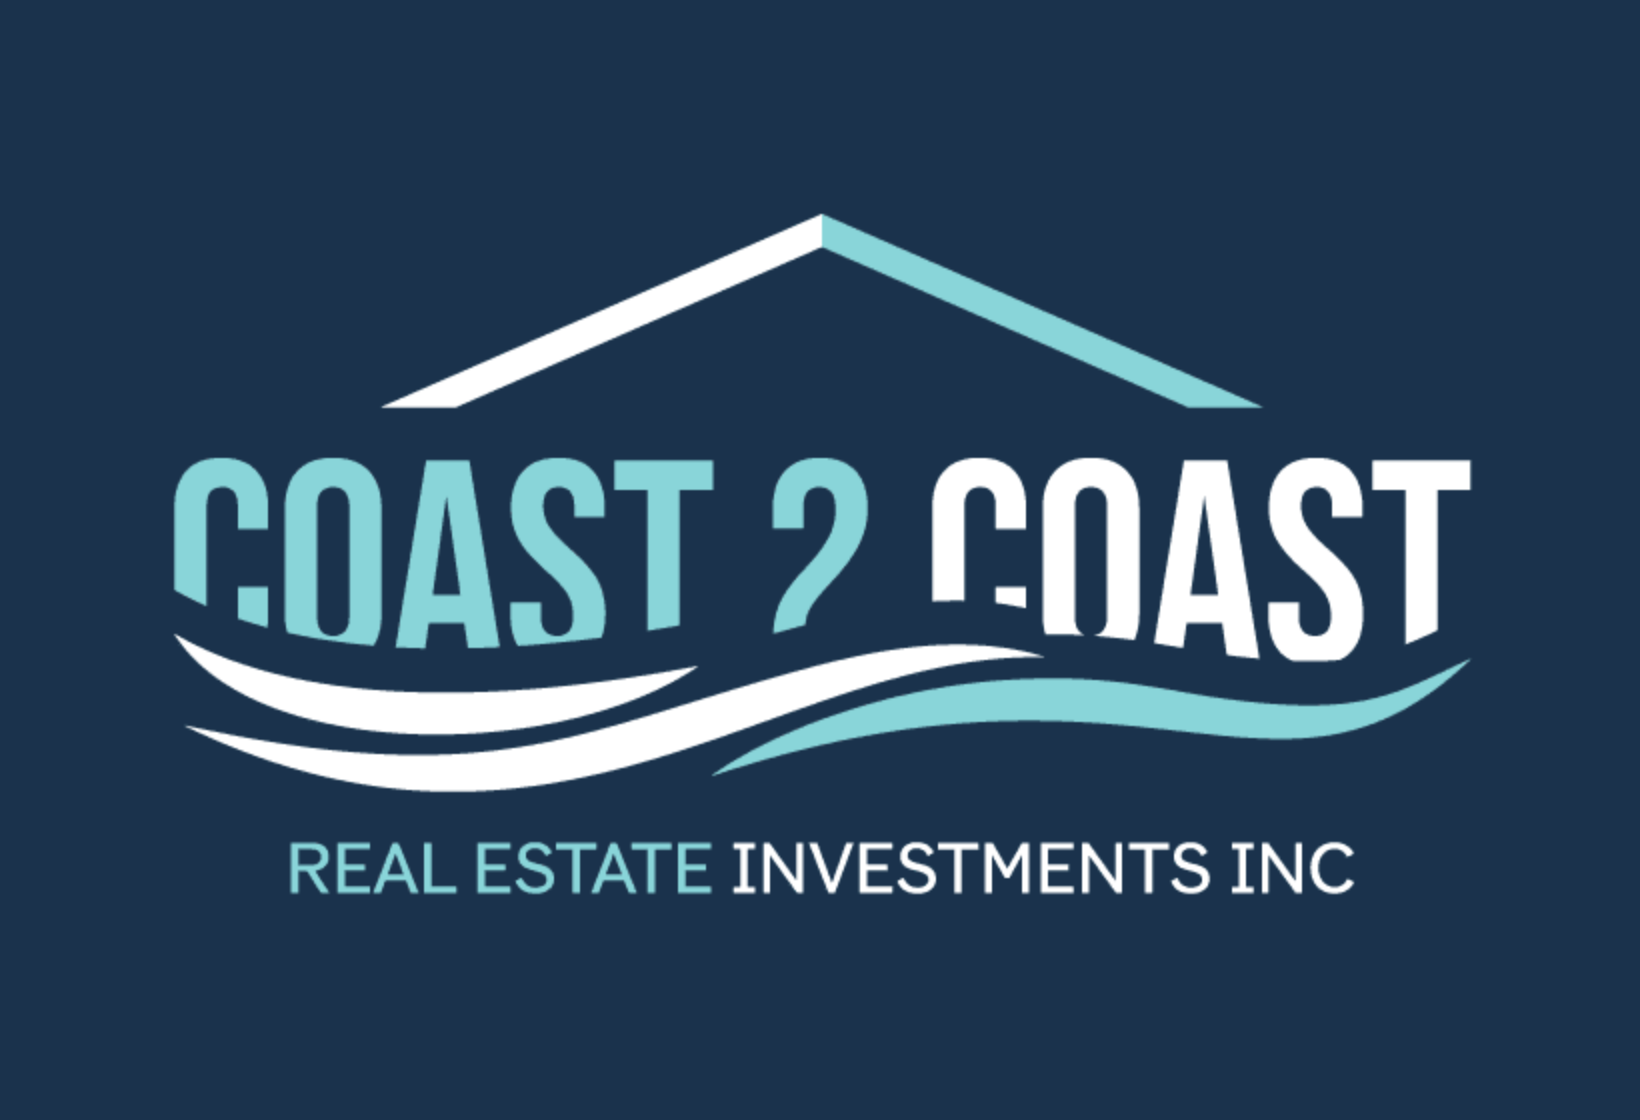 Coast 2 Coast Real Estate Investments Inc.